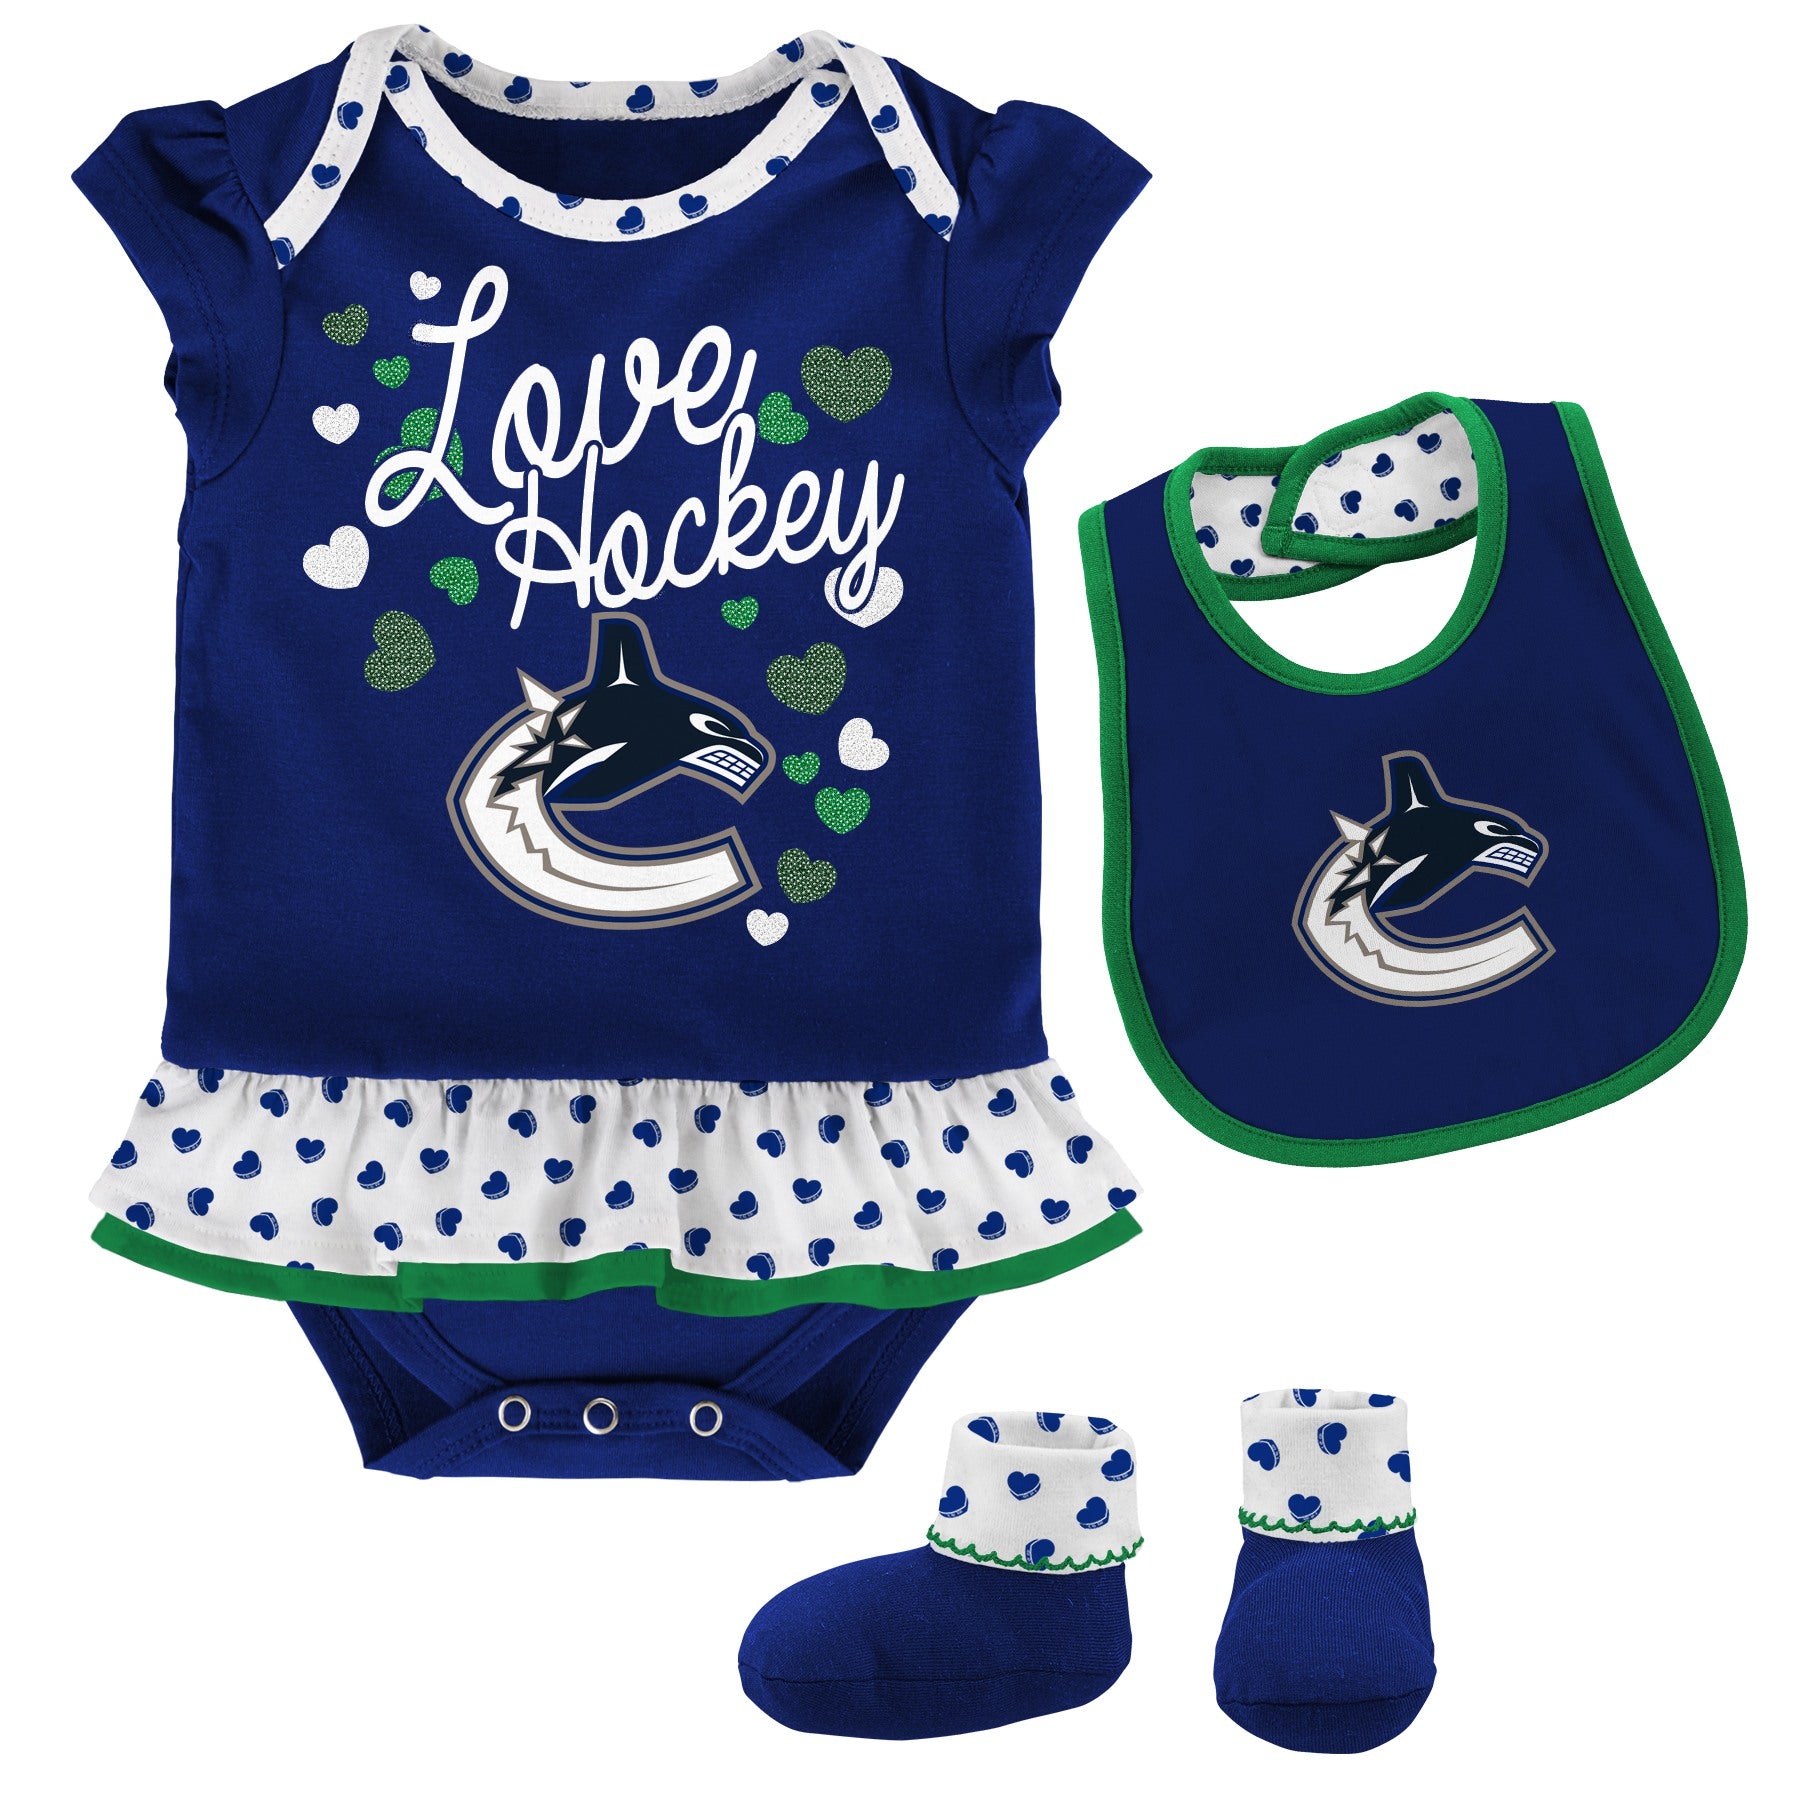 Baby NHL Hockey Gear, Toddler, NHL Newborn hockey Clothing, Infant Apparel